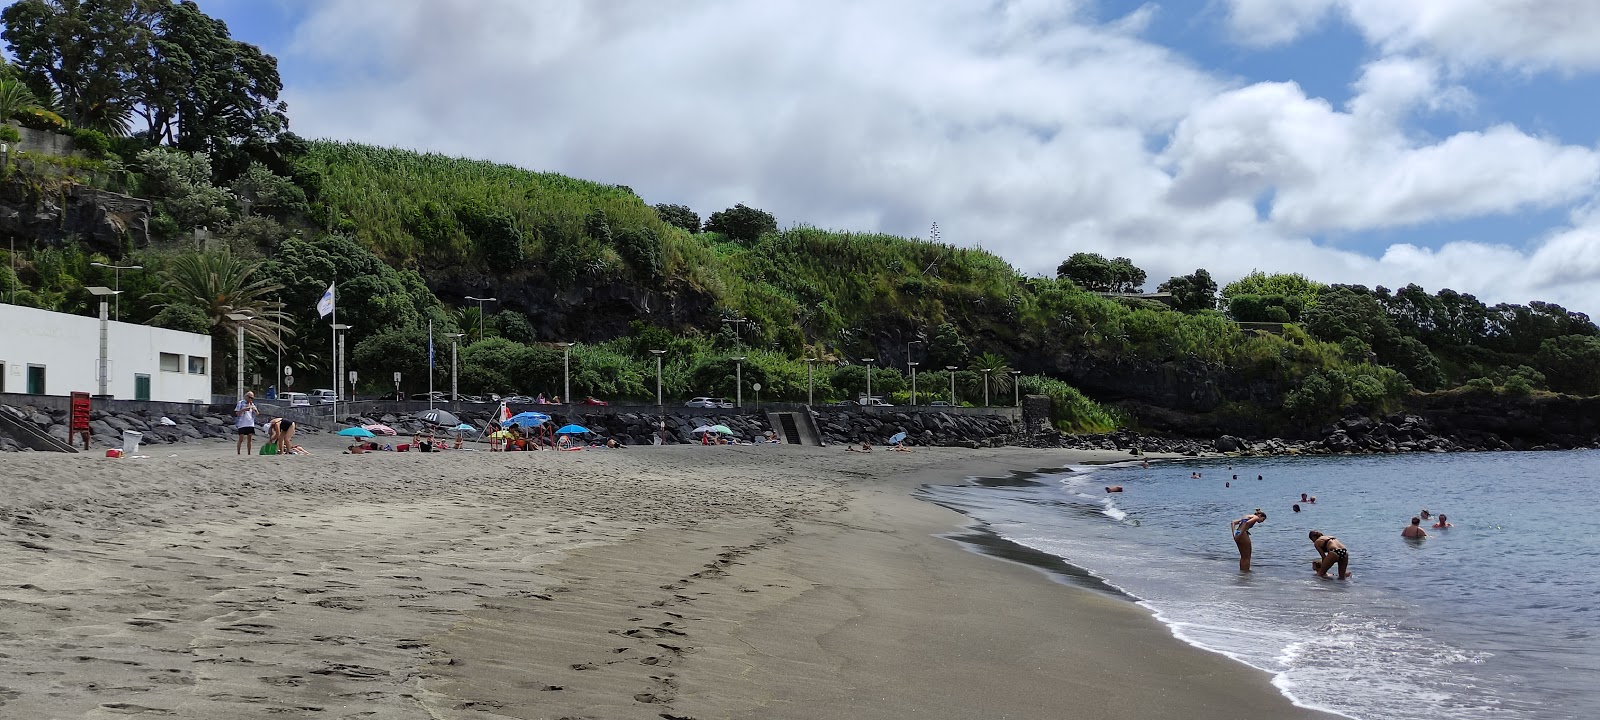 Photo of Praia da Vinha da Areia - popular place among relax connoisseurs